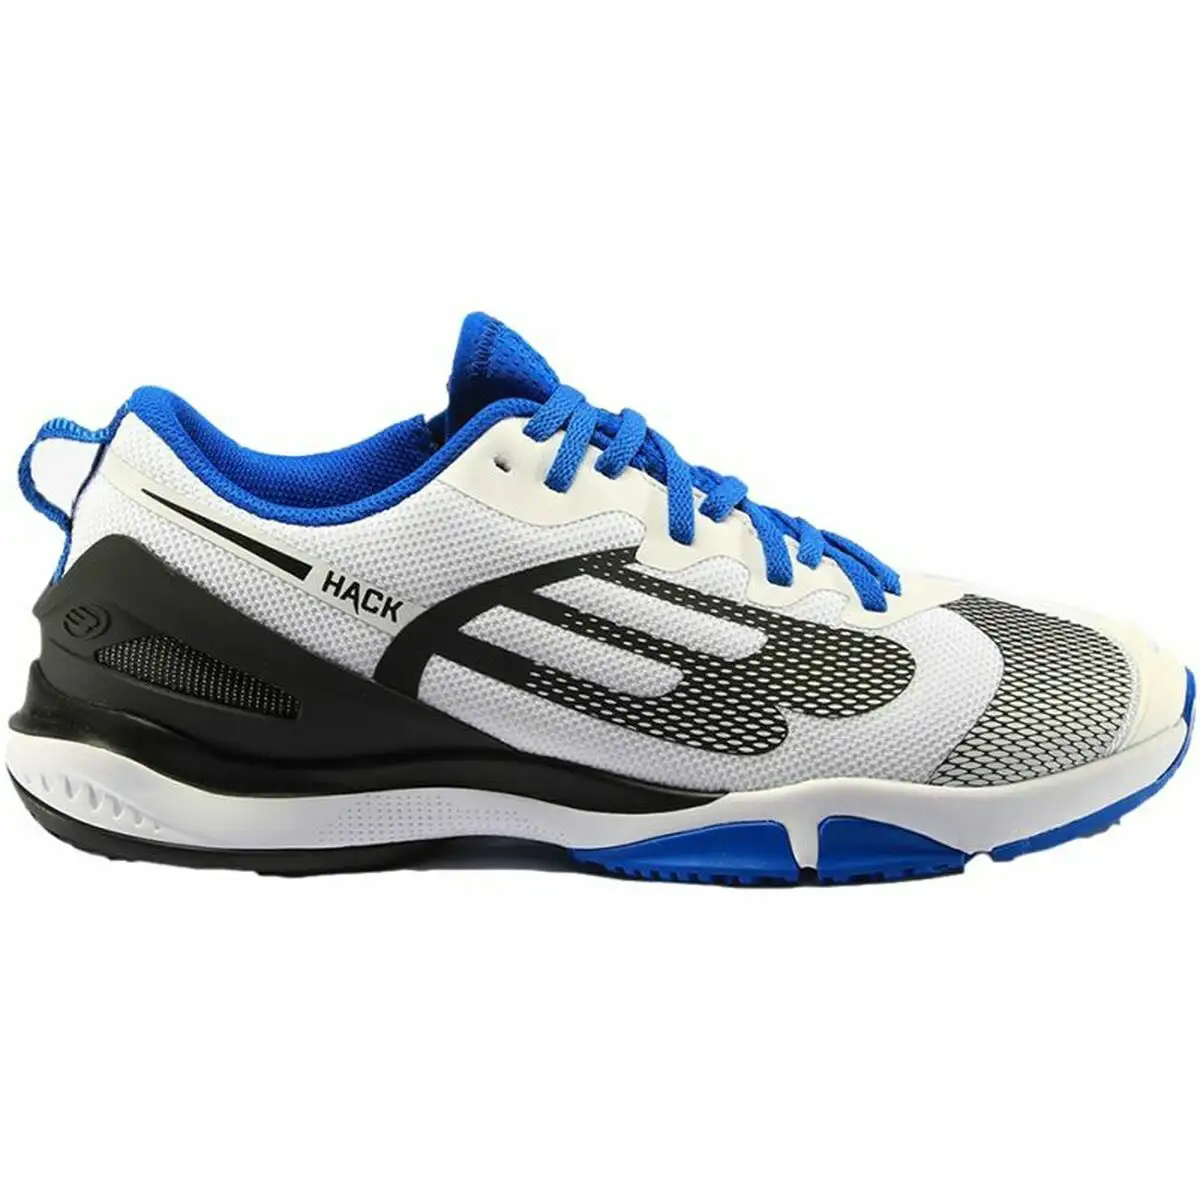 Chaussures de sport pour homme bullpadel hack hybrid fly 22l blanc_6376. DIAYTAR SENEGAL - Où Choisir Devient une Découverte. Explorez notre boutique en ligne et trouvez des articles qui vous surprennent et vous ravissent à chaque clic.